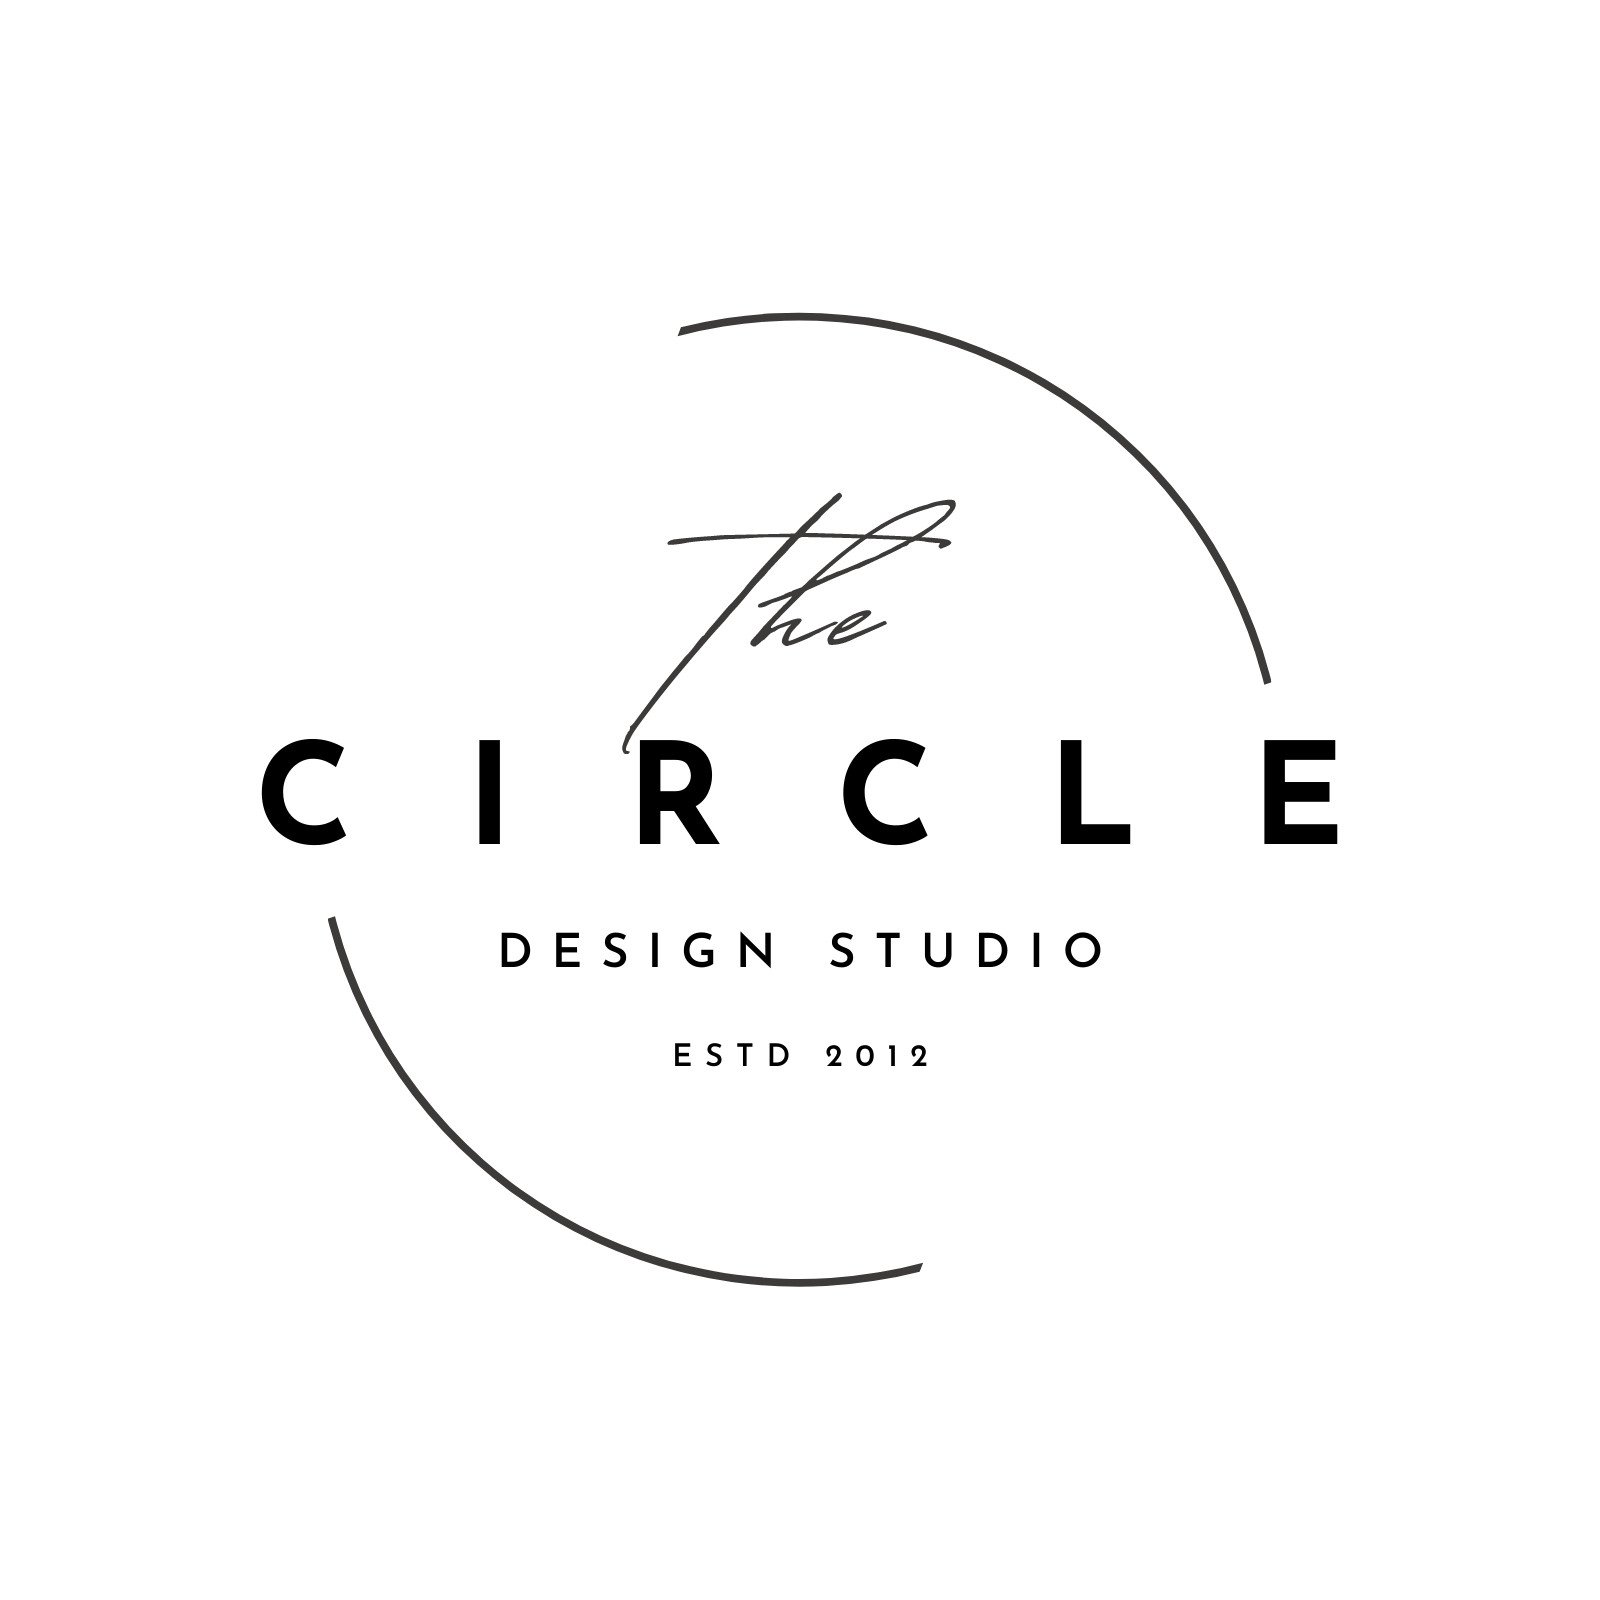 Free Simple Modern Circle Design Studio Logo